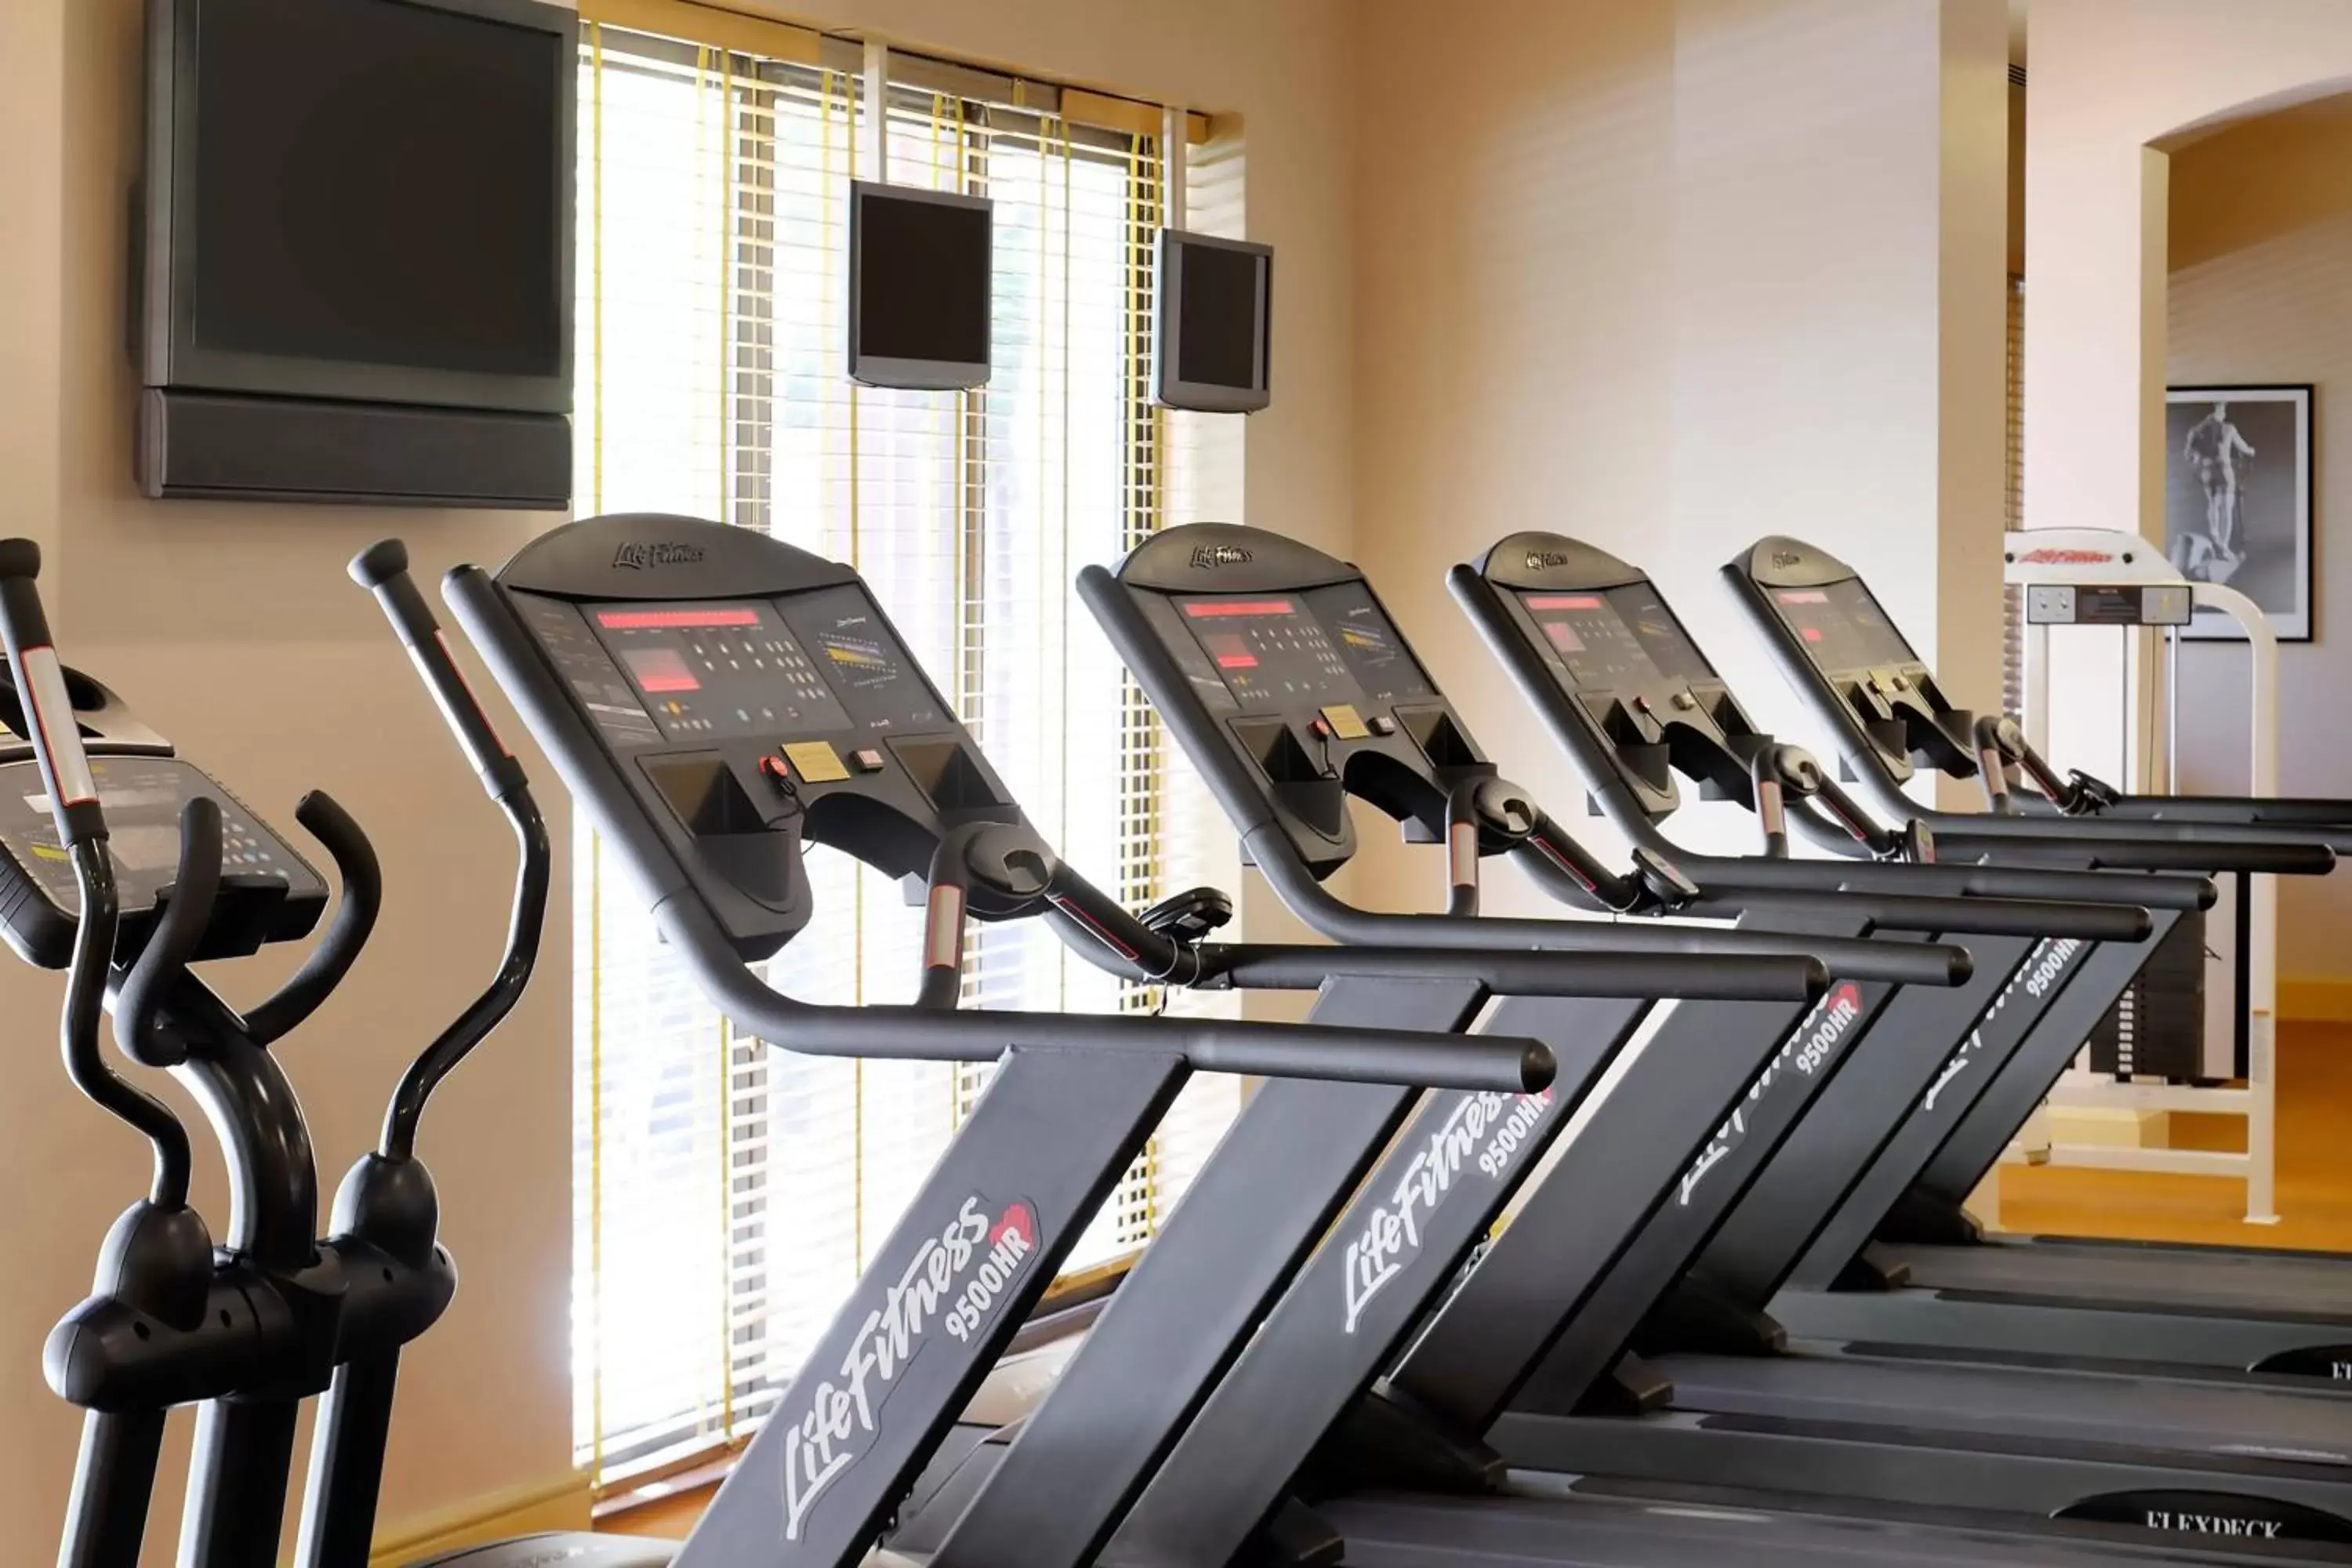 Fitness centre/facilities, Fitness Center/Facilities in Dead Sea Marriott Resort & Spa